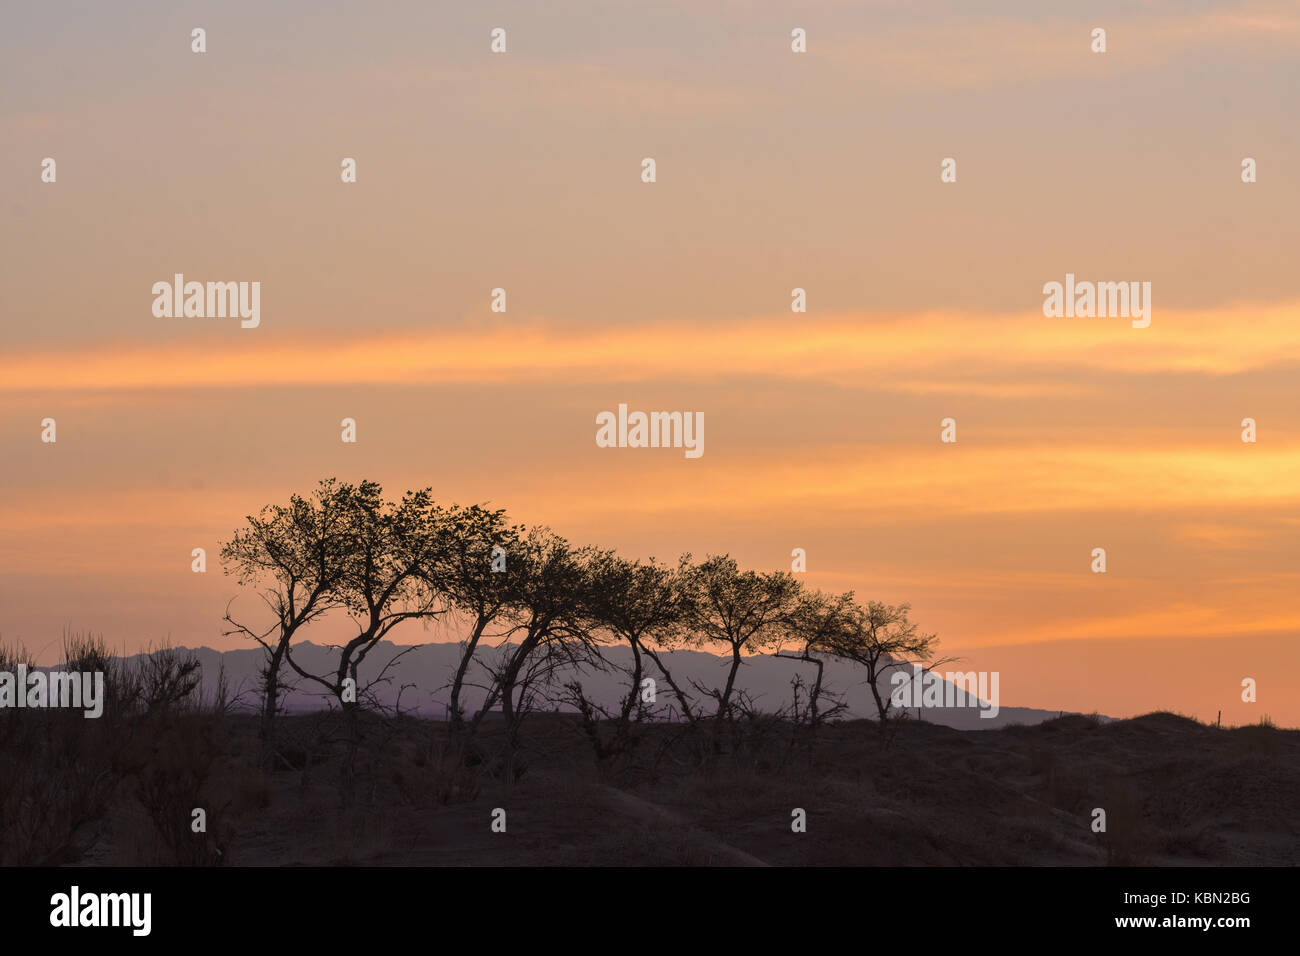 Silhouettes d'arbres sur colline avec orange ciel on background Banque D'Images